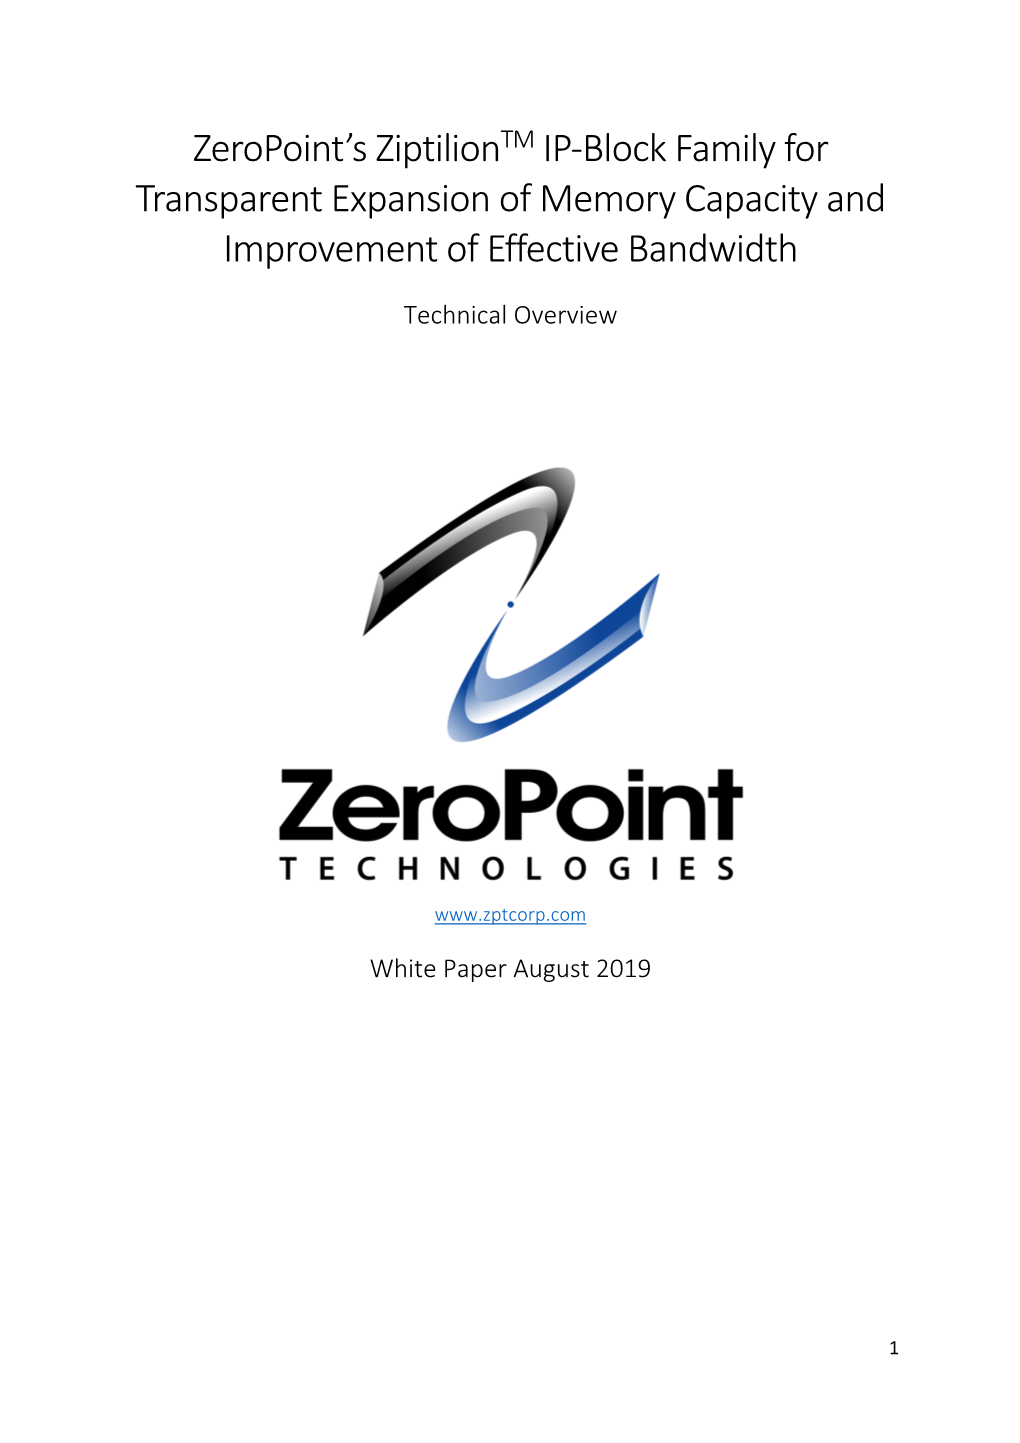 Zeropoint's Ziptiliontm IP-Block Family for Transparent Expansion